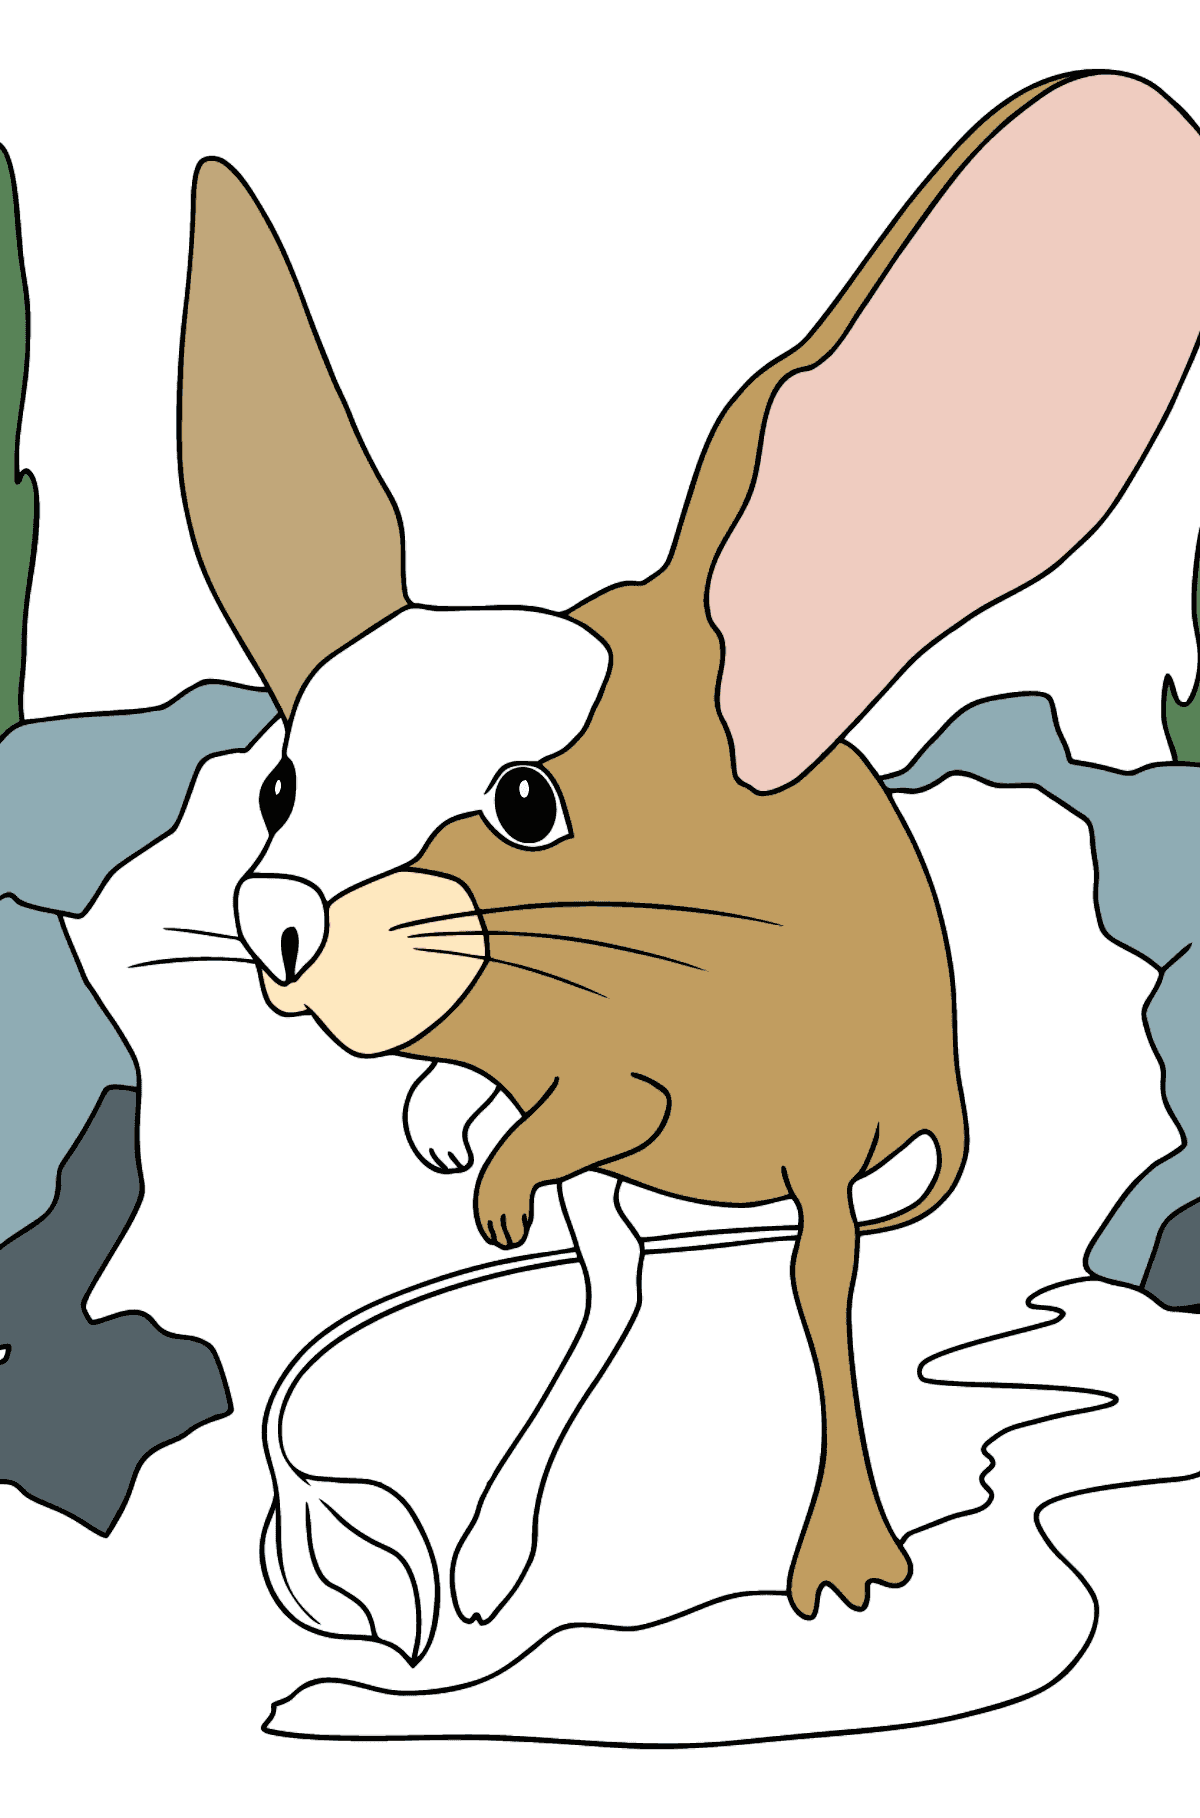 Desenho de rato para colorir - Imagens para Colorir para Crianças